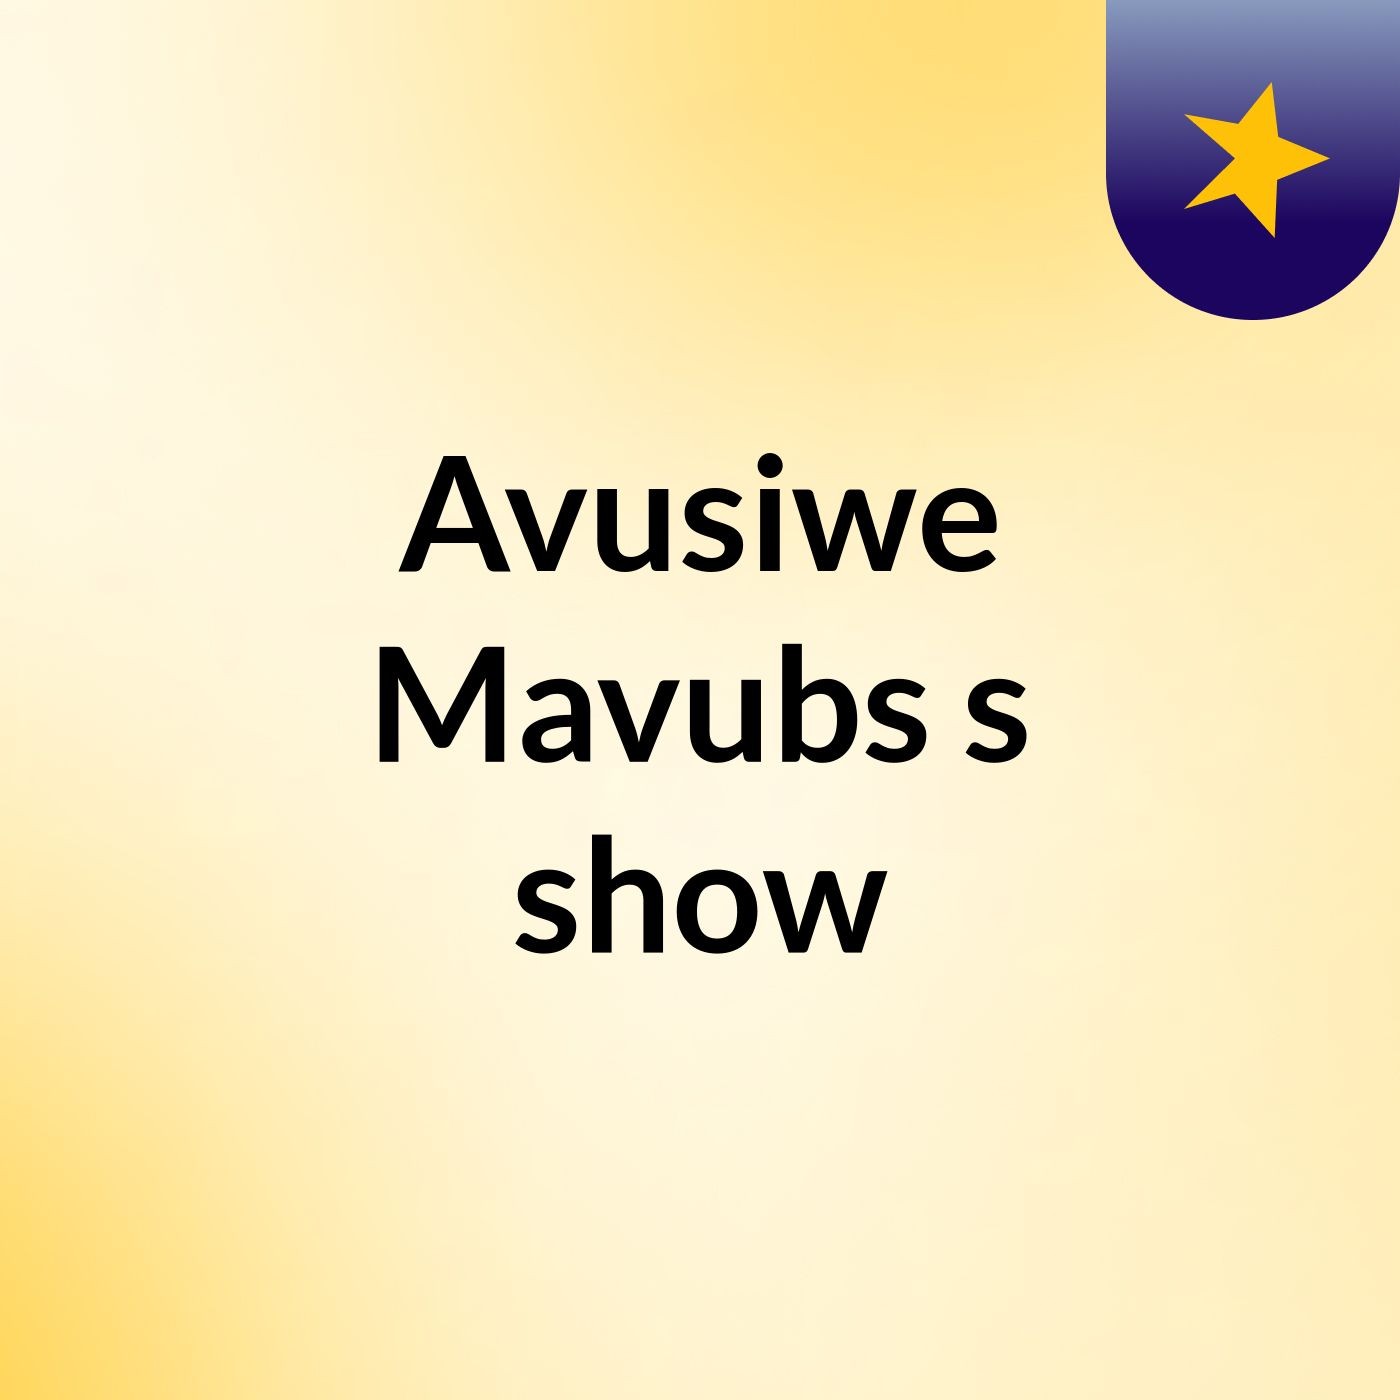 Episode 10 - Avusiwe Mavubs's show